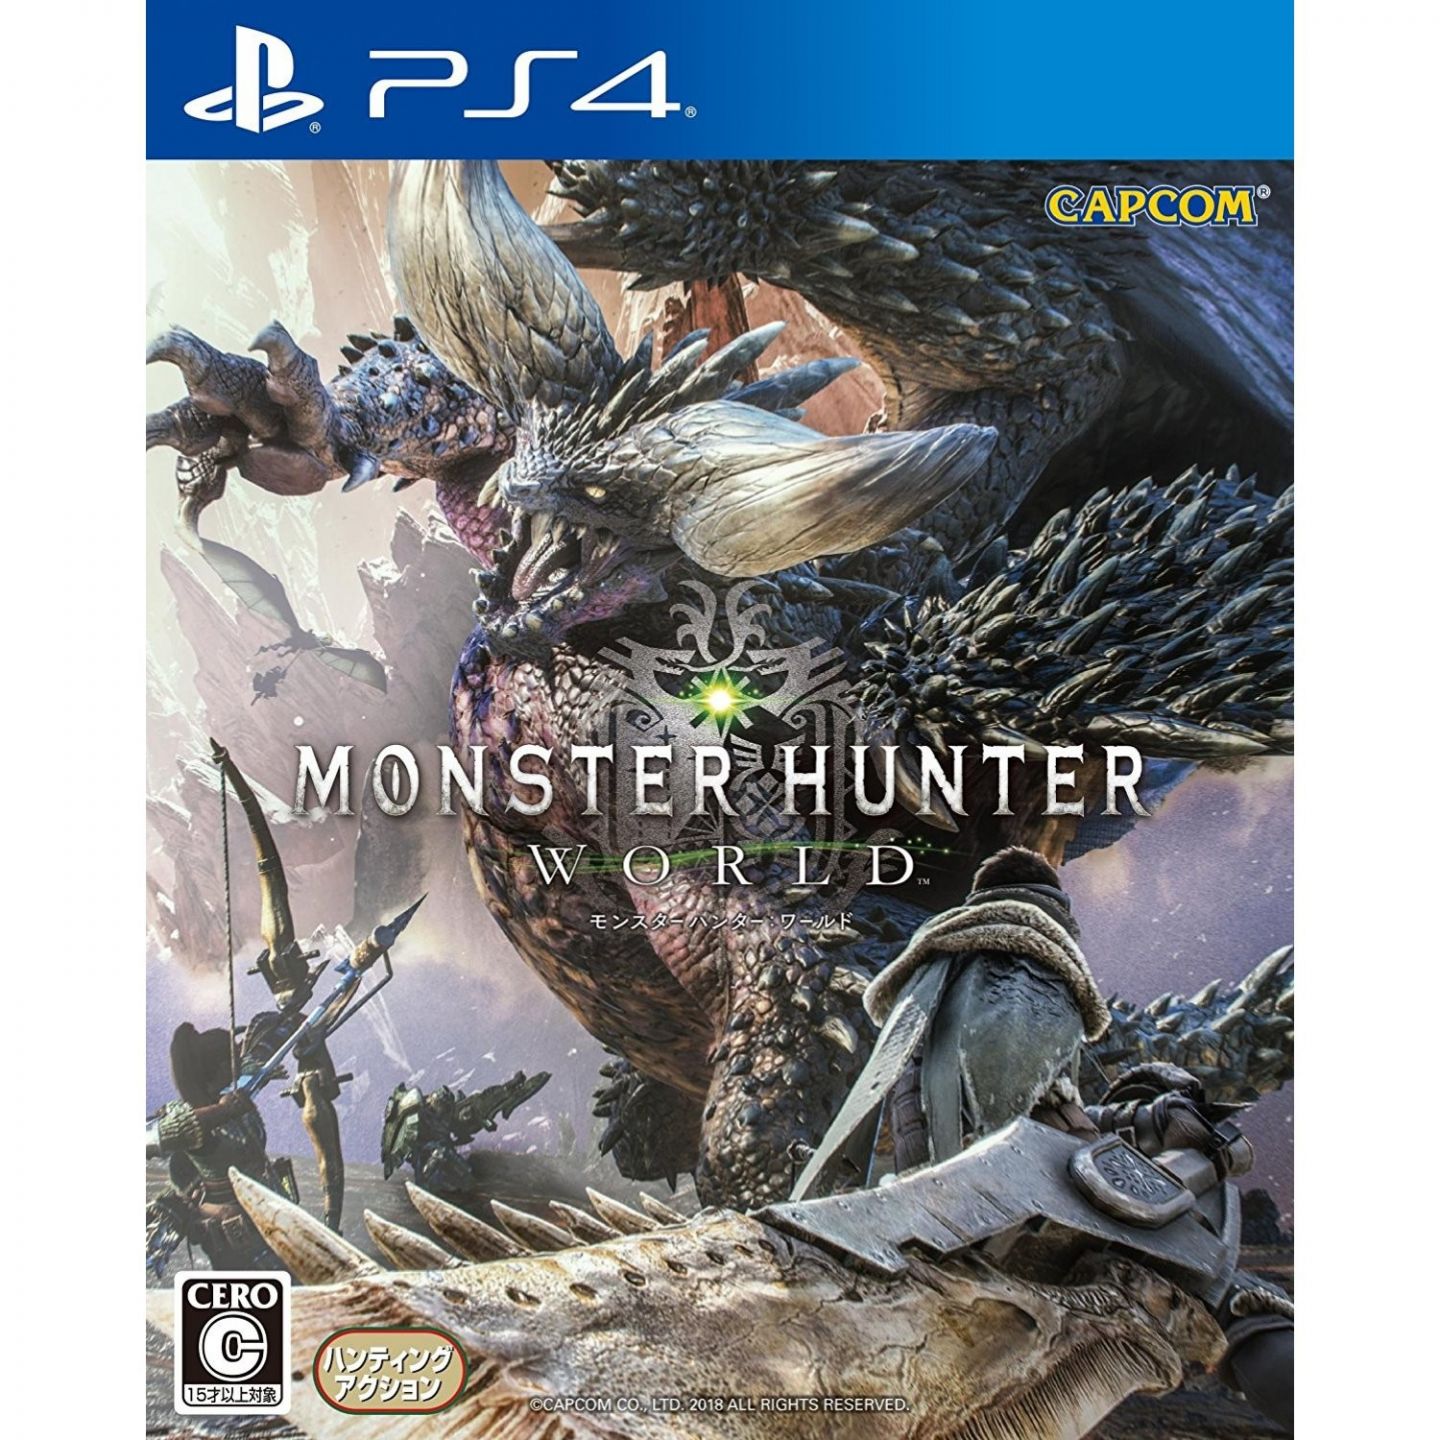 quagga Urskive enkemand Capcom Monster Hunter World SONY PS4 PLAYSTATION 4